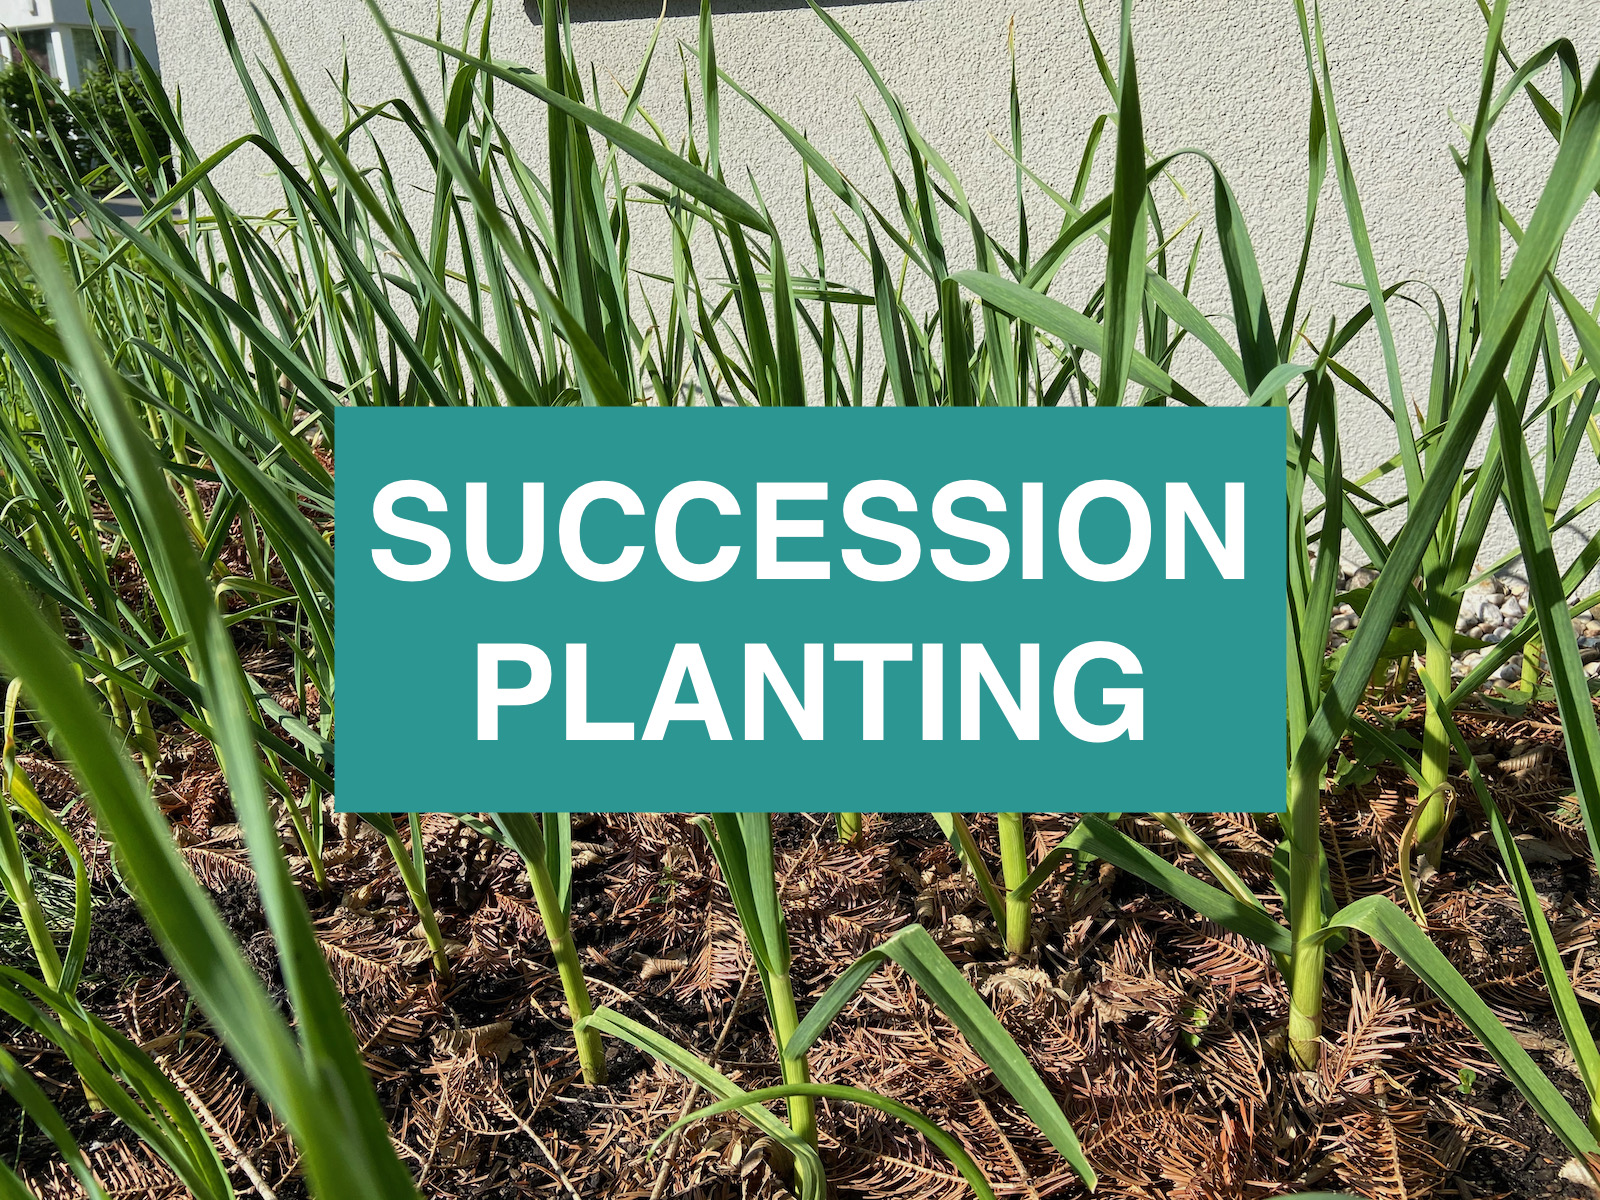 Succession planting